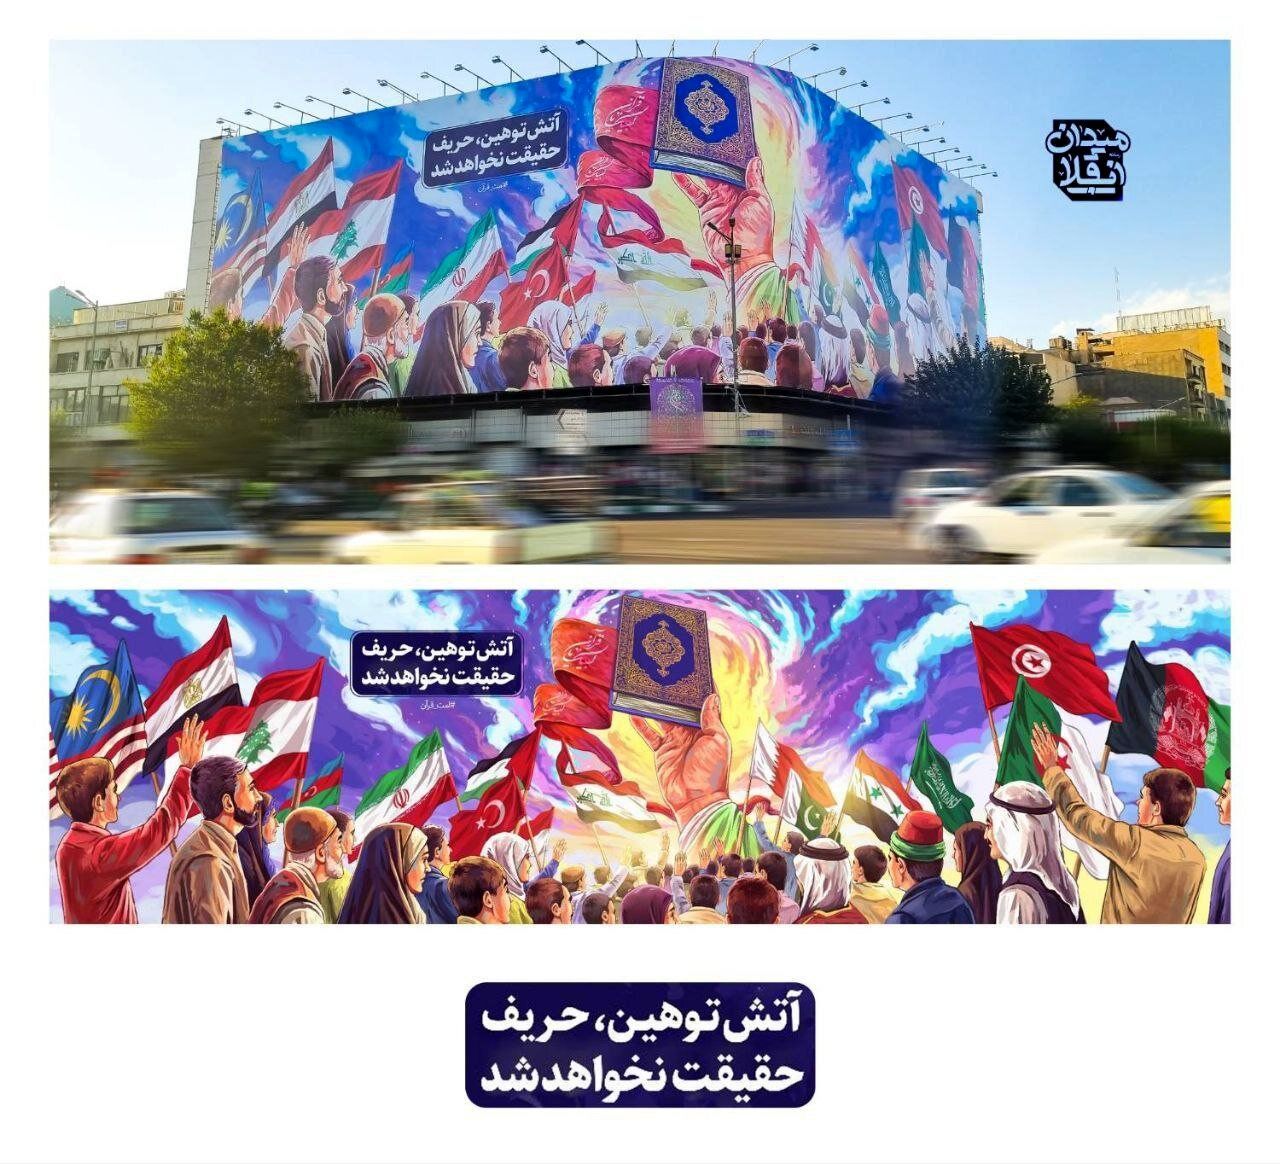 رونمایی از دیوارنگاره جدید میدان انقلاب / این سخن رئیسی حک شد + عکس